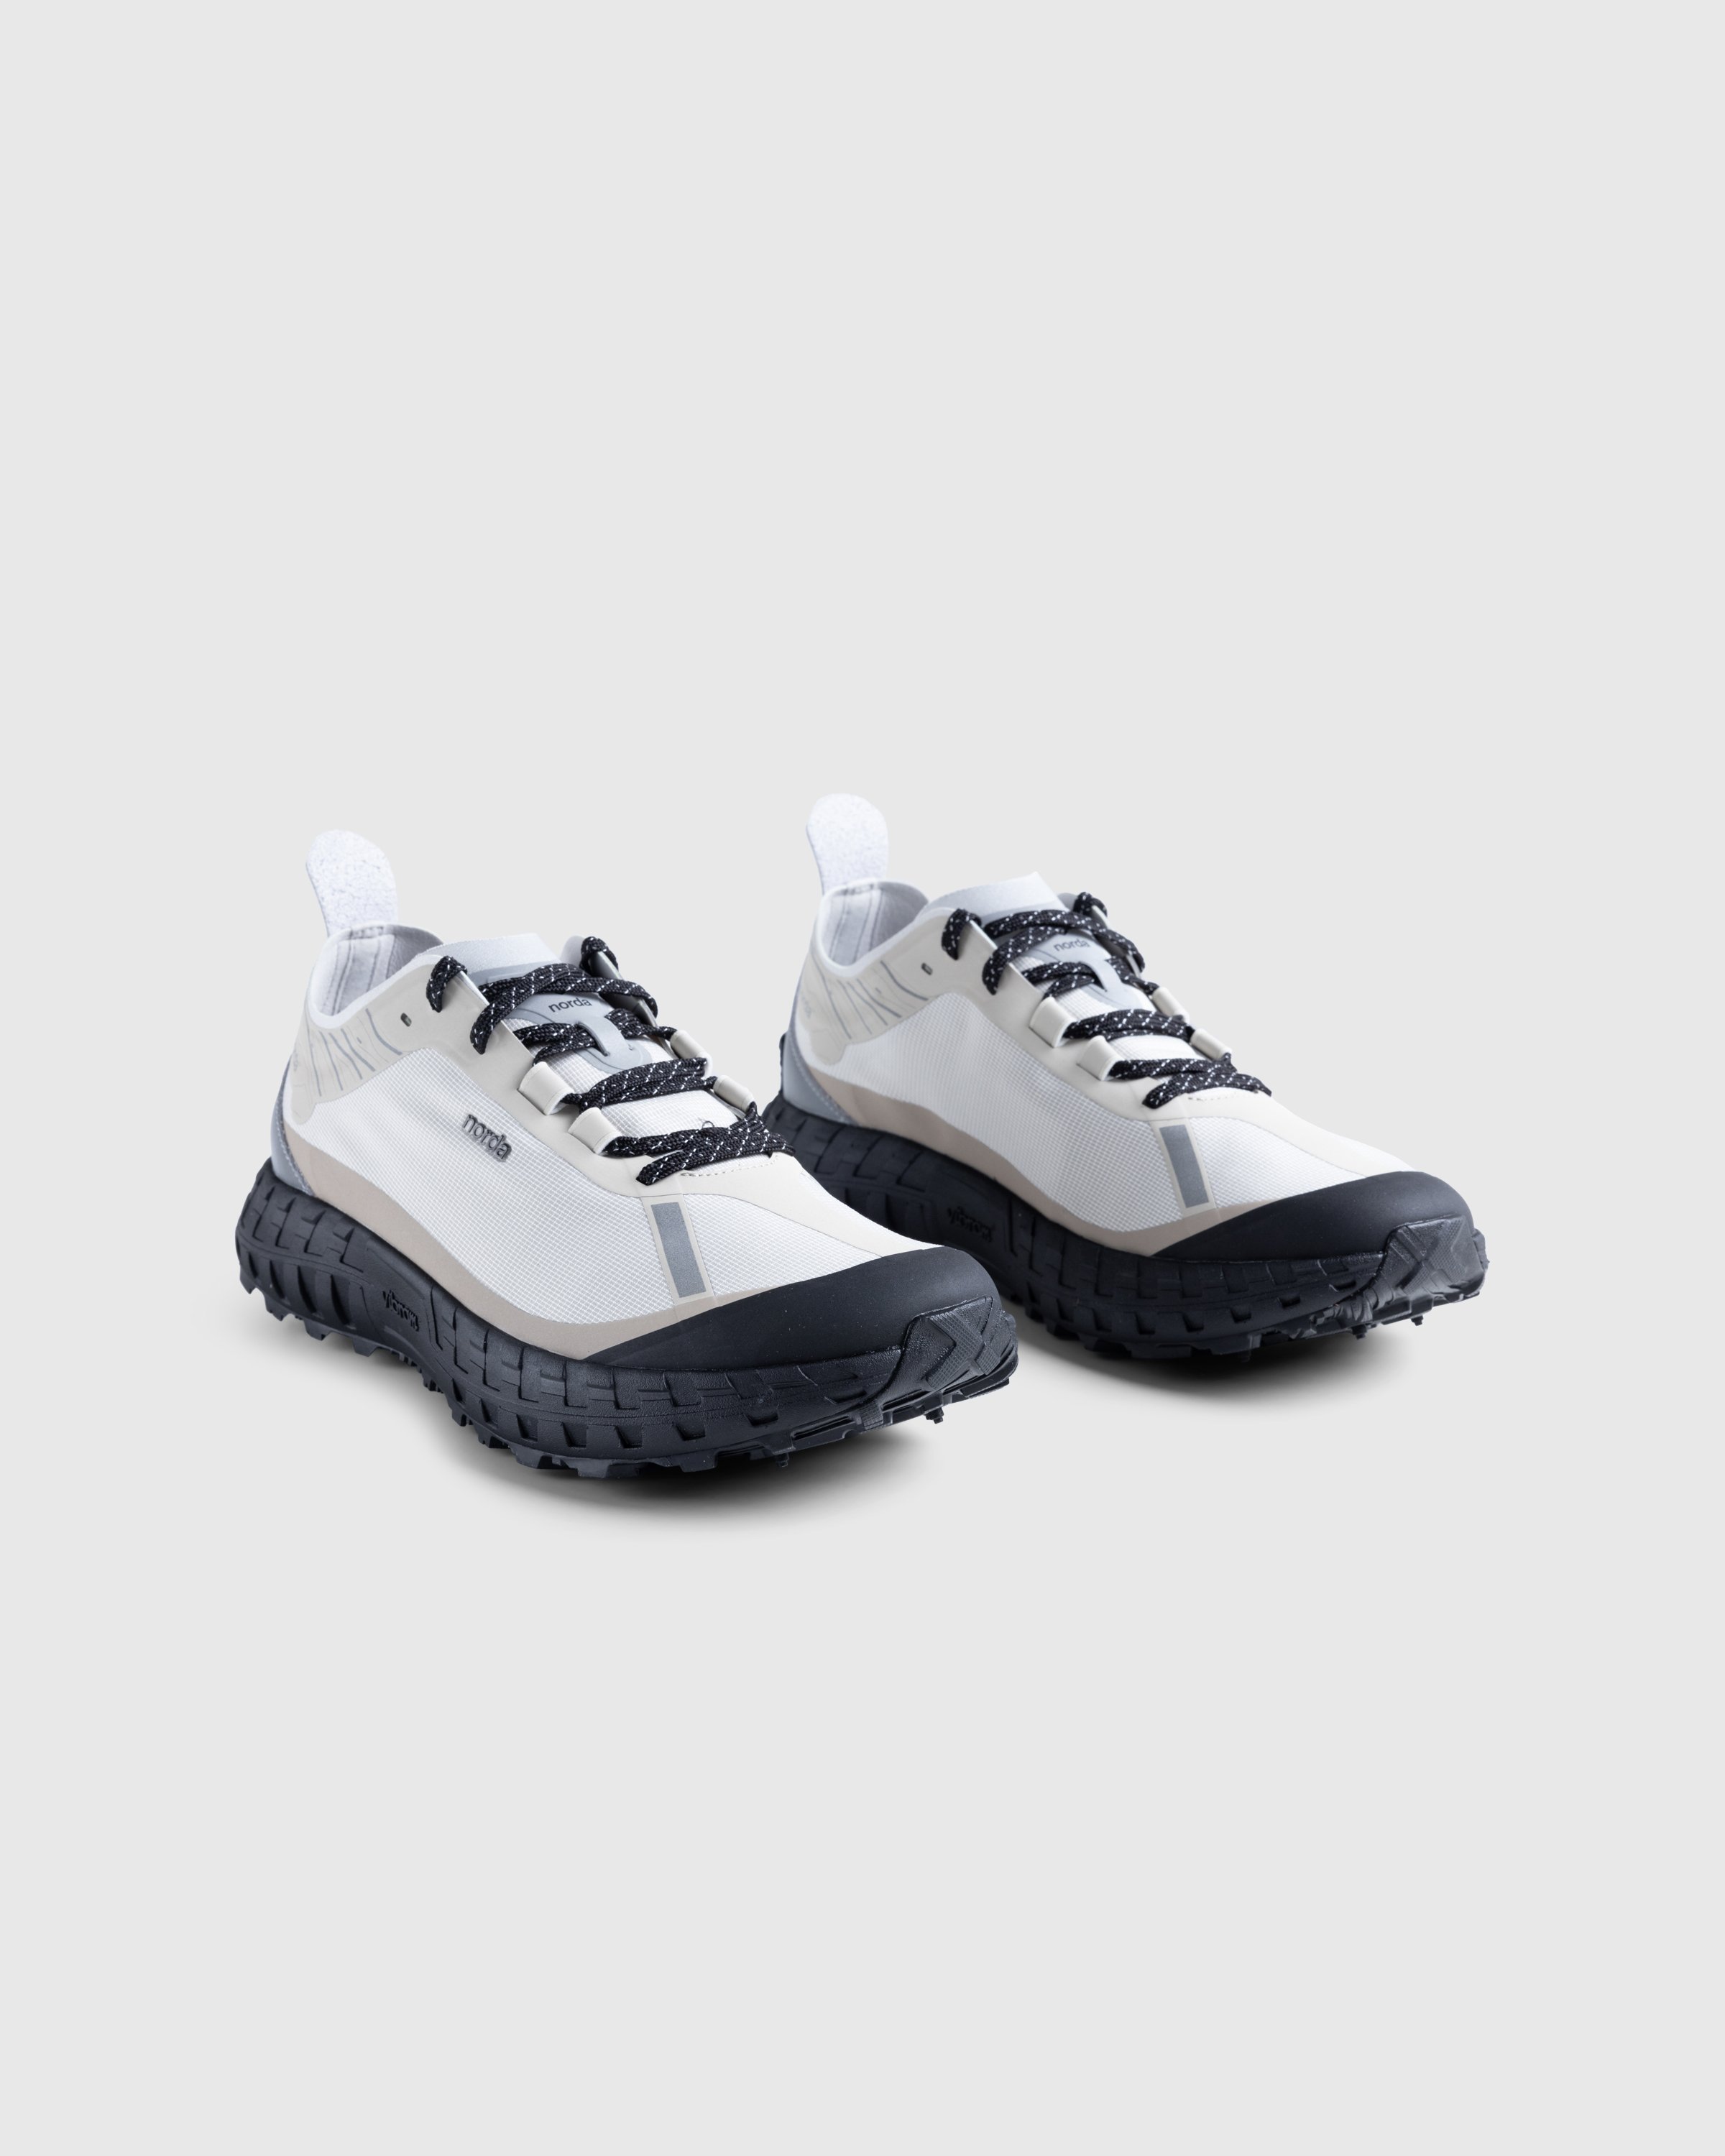 Norda - NORDA001-M - Footwear - Grey - Image 3